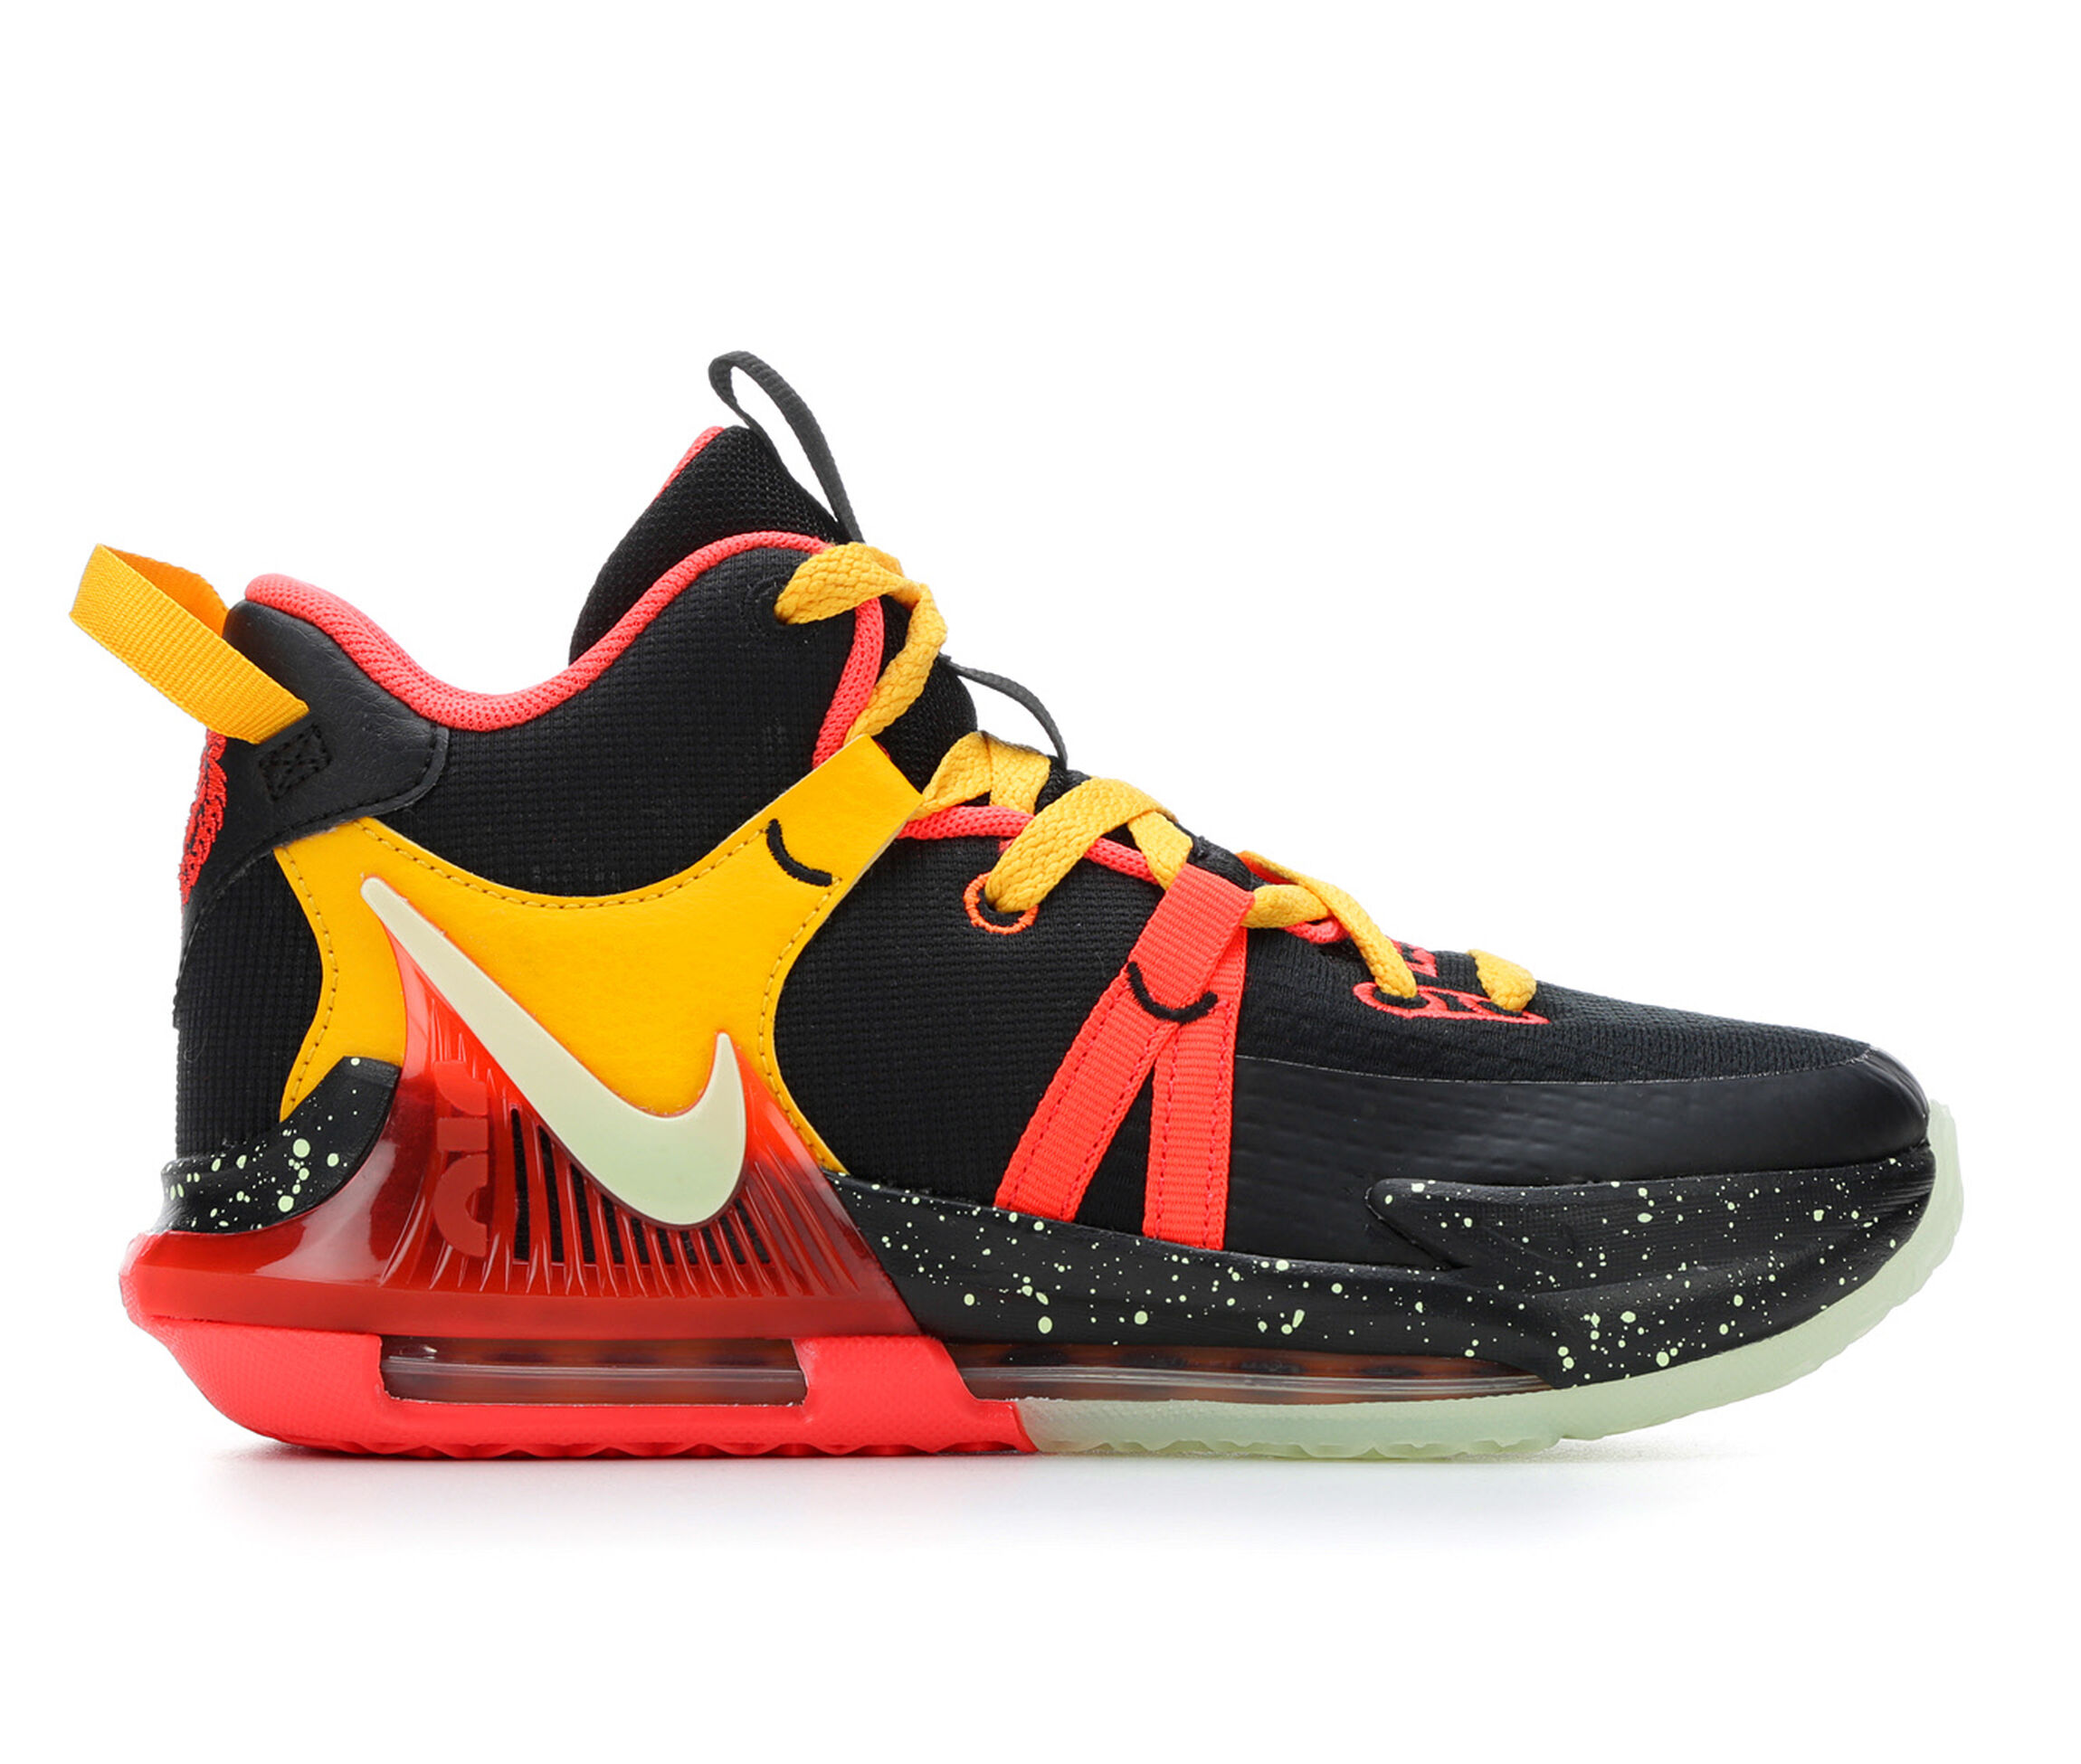 Nike Basketball Shoes | Shoe Carnival